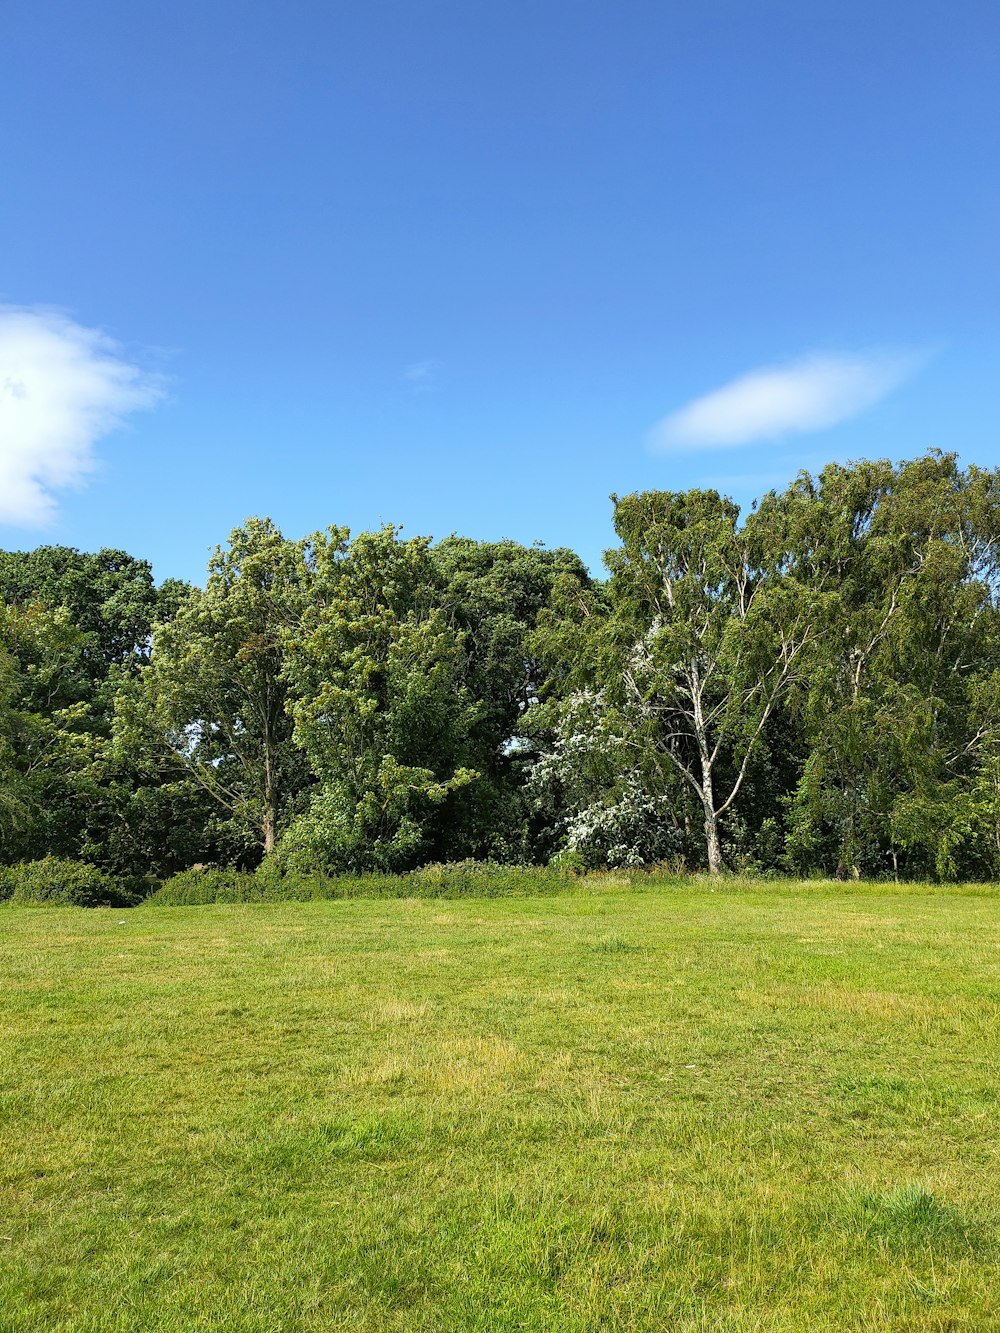 Champ d’herbe verte avec des arbres verts sous le ciel bleu pendant la journée